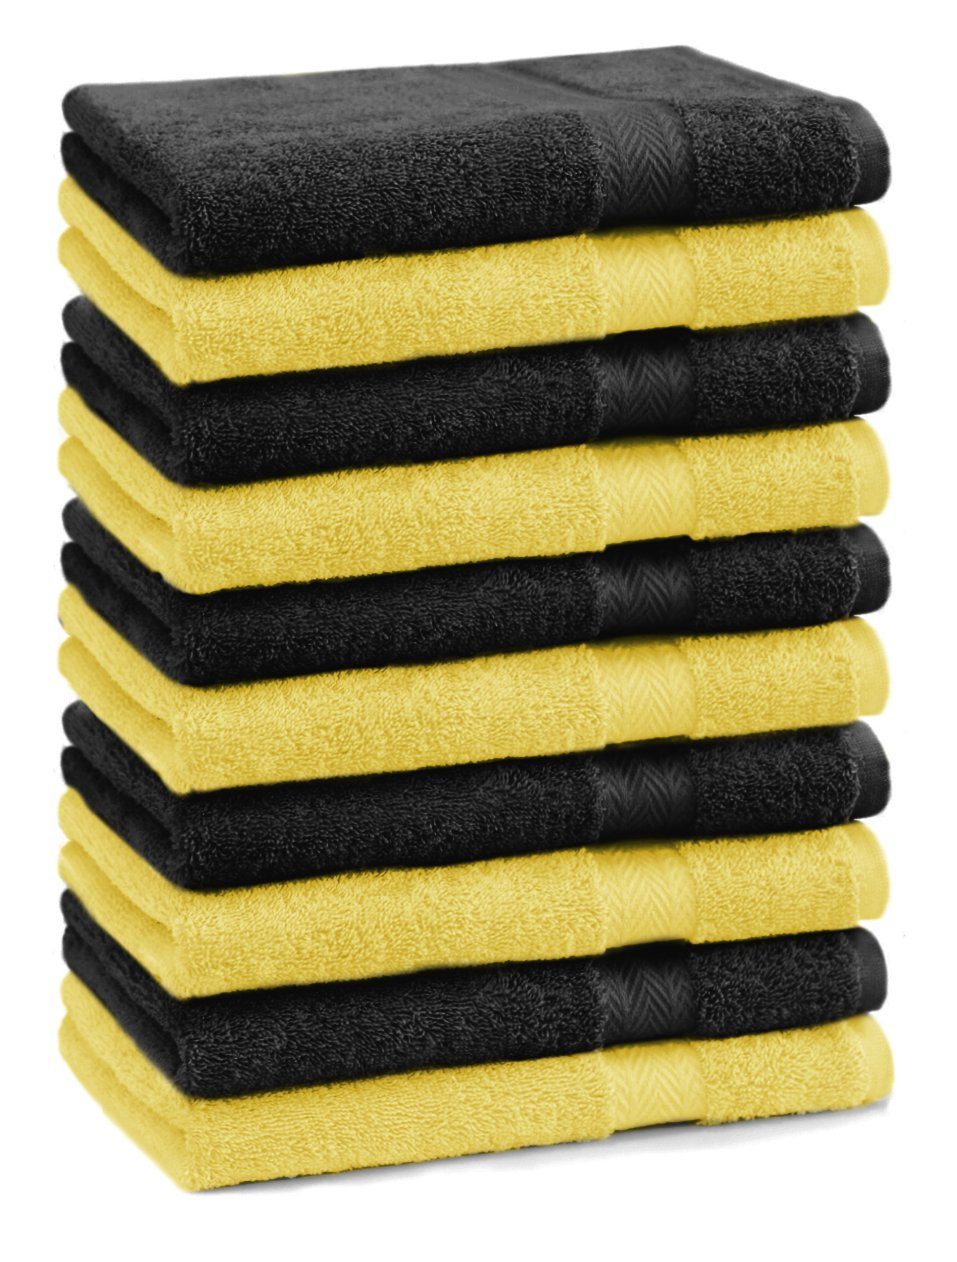 Betz Gästehandtücher 10 Stück Gästehandtücher Premium 100% Baumwolle Gästetuch-Set 30x50 cm Farbe gelb und schwarz, 100% Baumwolle